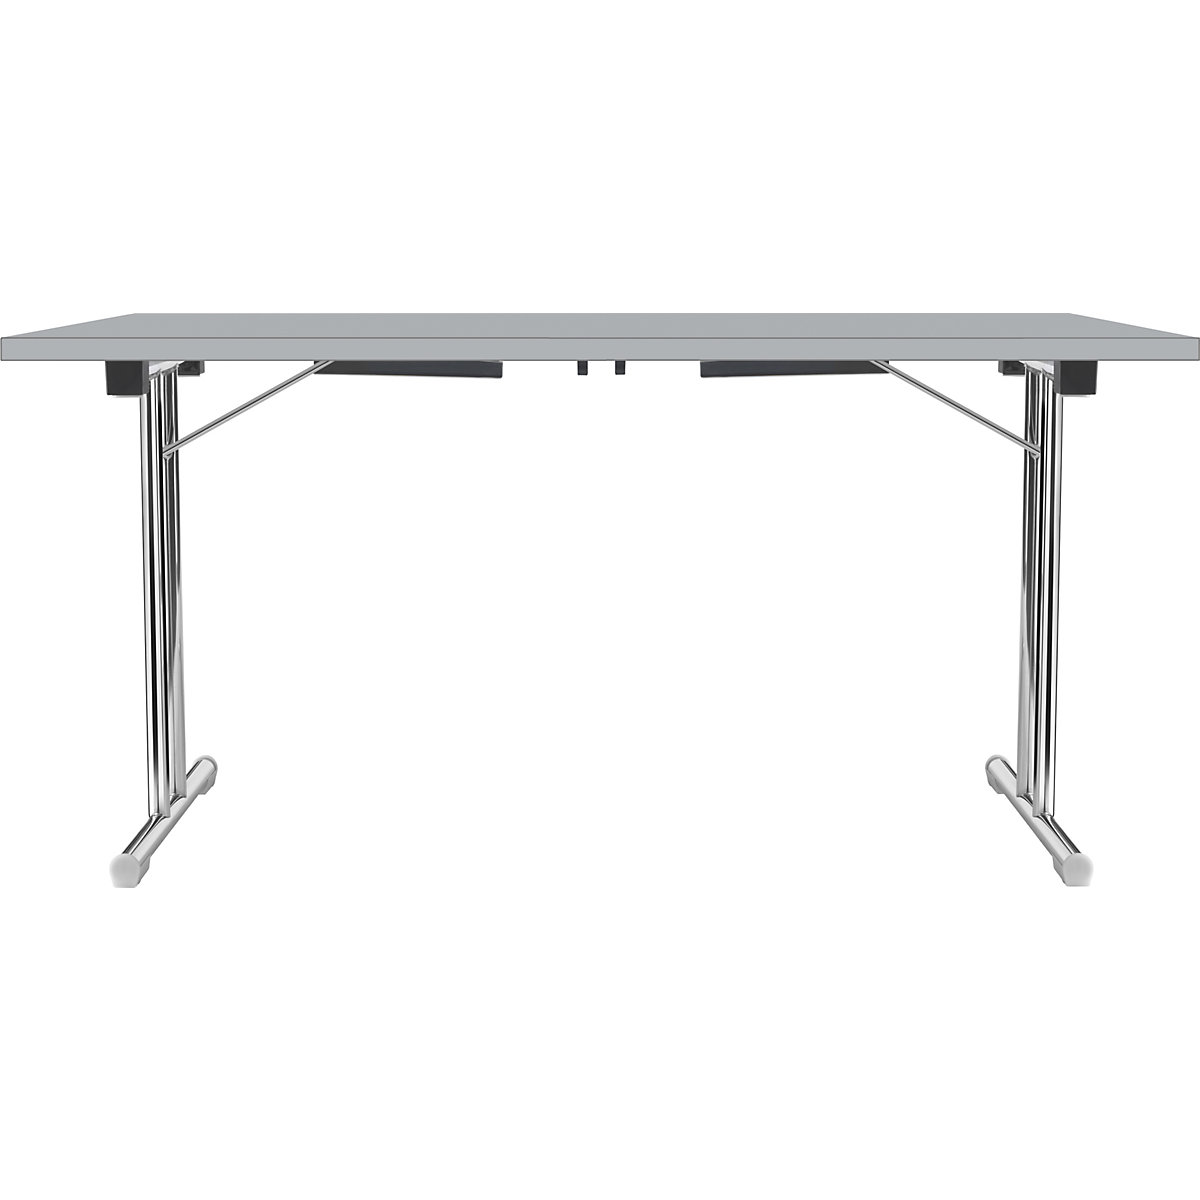 Inklapbare tafel met dubbel T-vormig onderstel, frame van staalbuis, verchroomd, lichtgrijs/lichtgrijs, b x d = 1200 x 600 mm-14